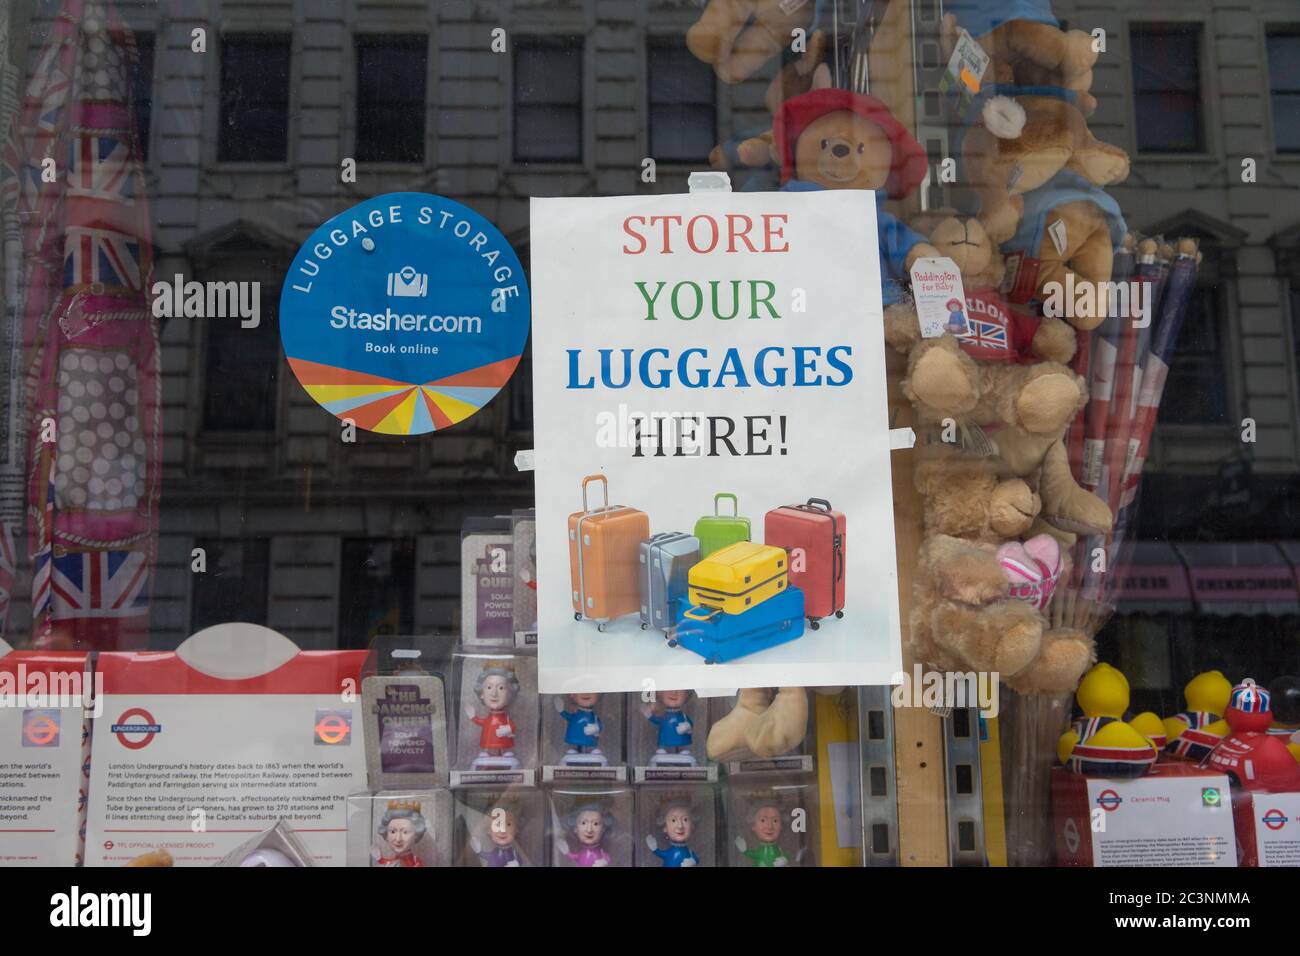 Rangez vos bagages ici signe dans la fenêtre d'une boutique de souvenirs. Londres Banque D'Images